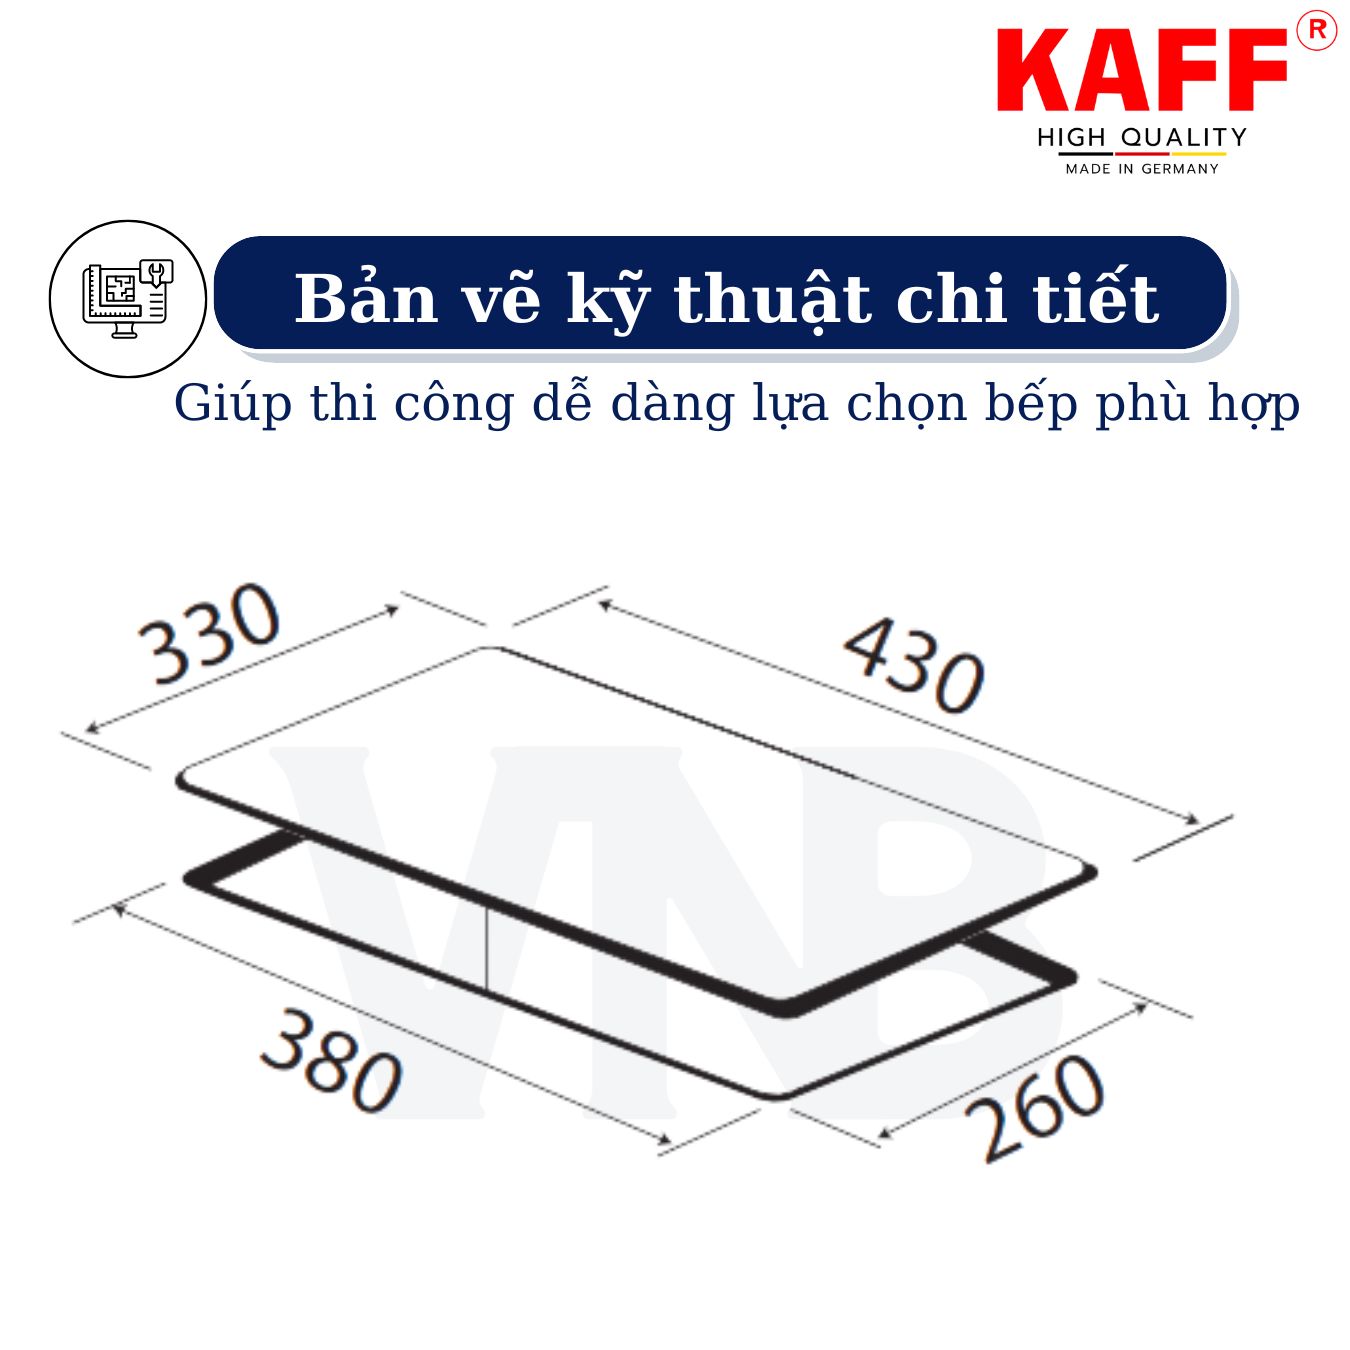 Bộ Bếp ga đơn KAFF KF- 330GH bao gồm: Bếp ga + chảo chống dính cao cấp + bộ van ga - Hàng chính hãng